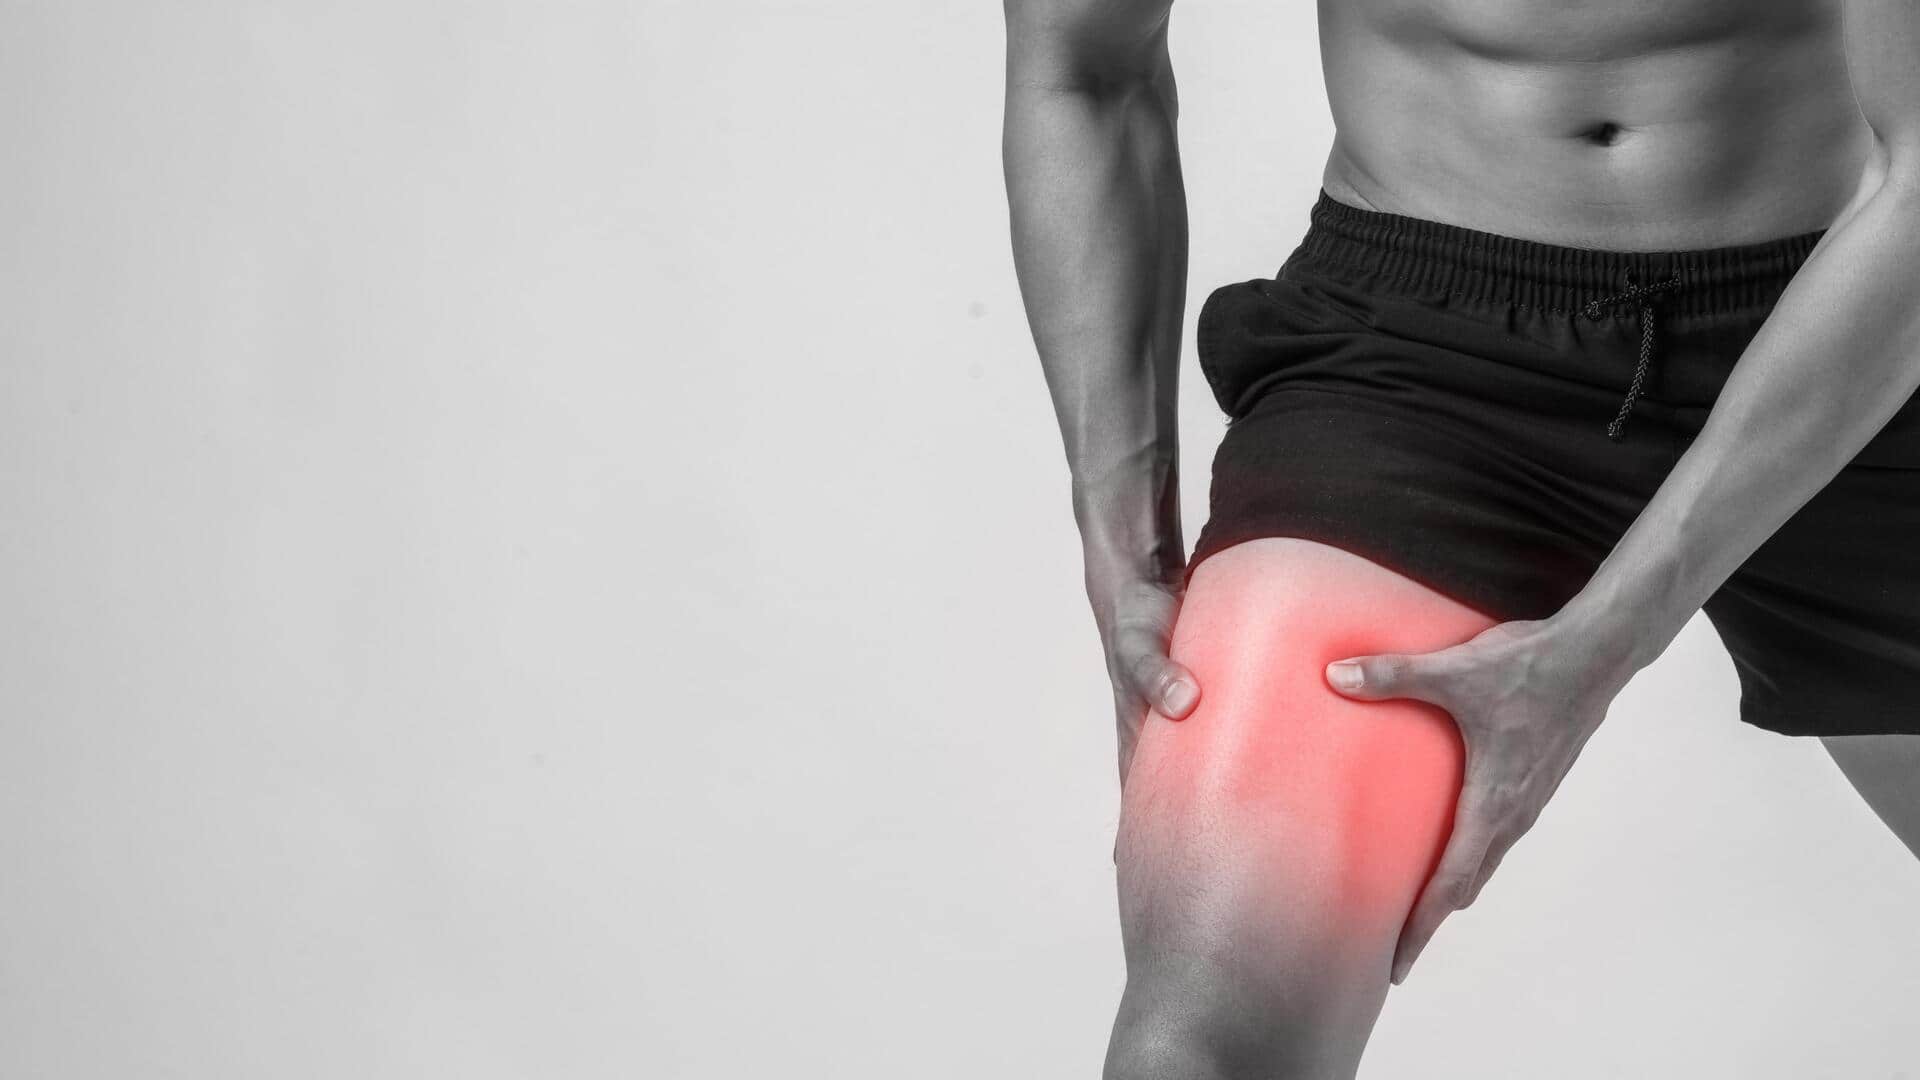 मांसपेशियों के दर्द का प्राकृतिक उपचार कर सकती हैं ये 5 चीजें